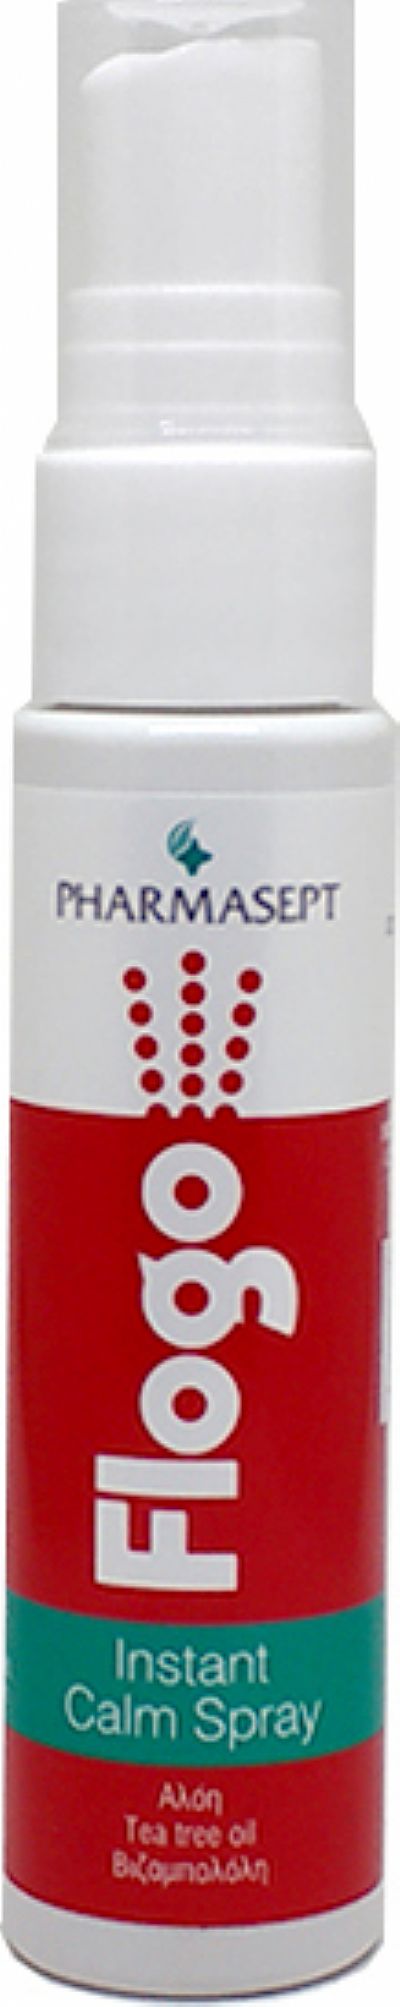 Pharmasept Flogo Instant Calm Spray 100 ml